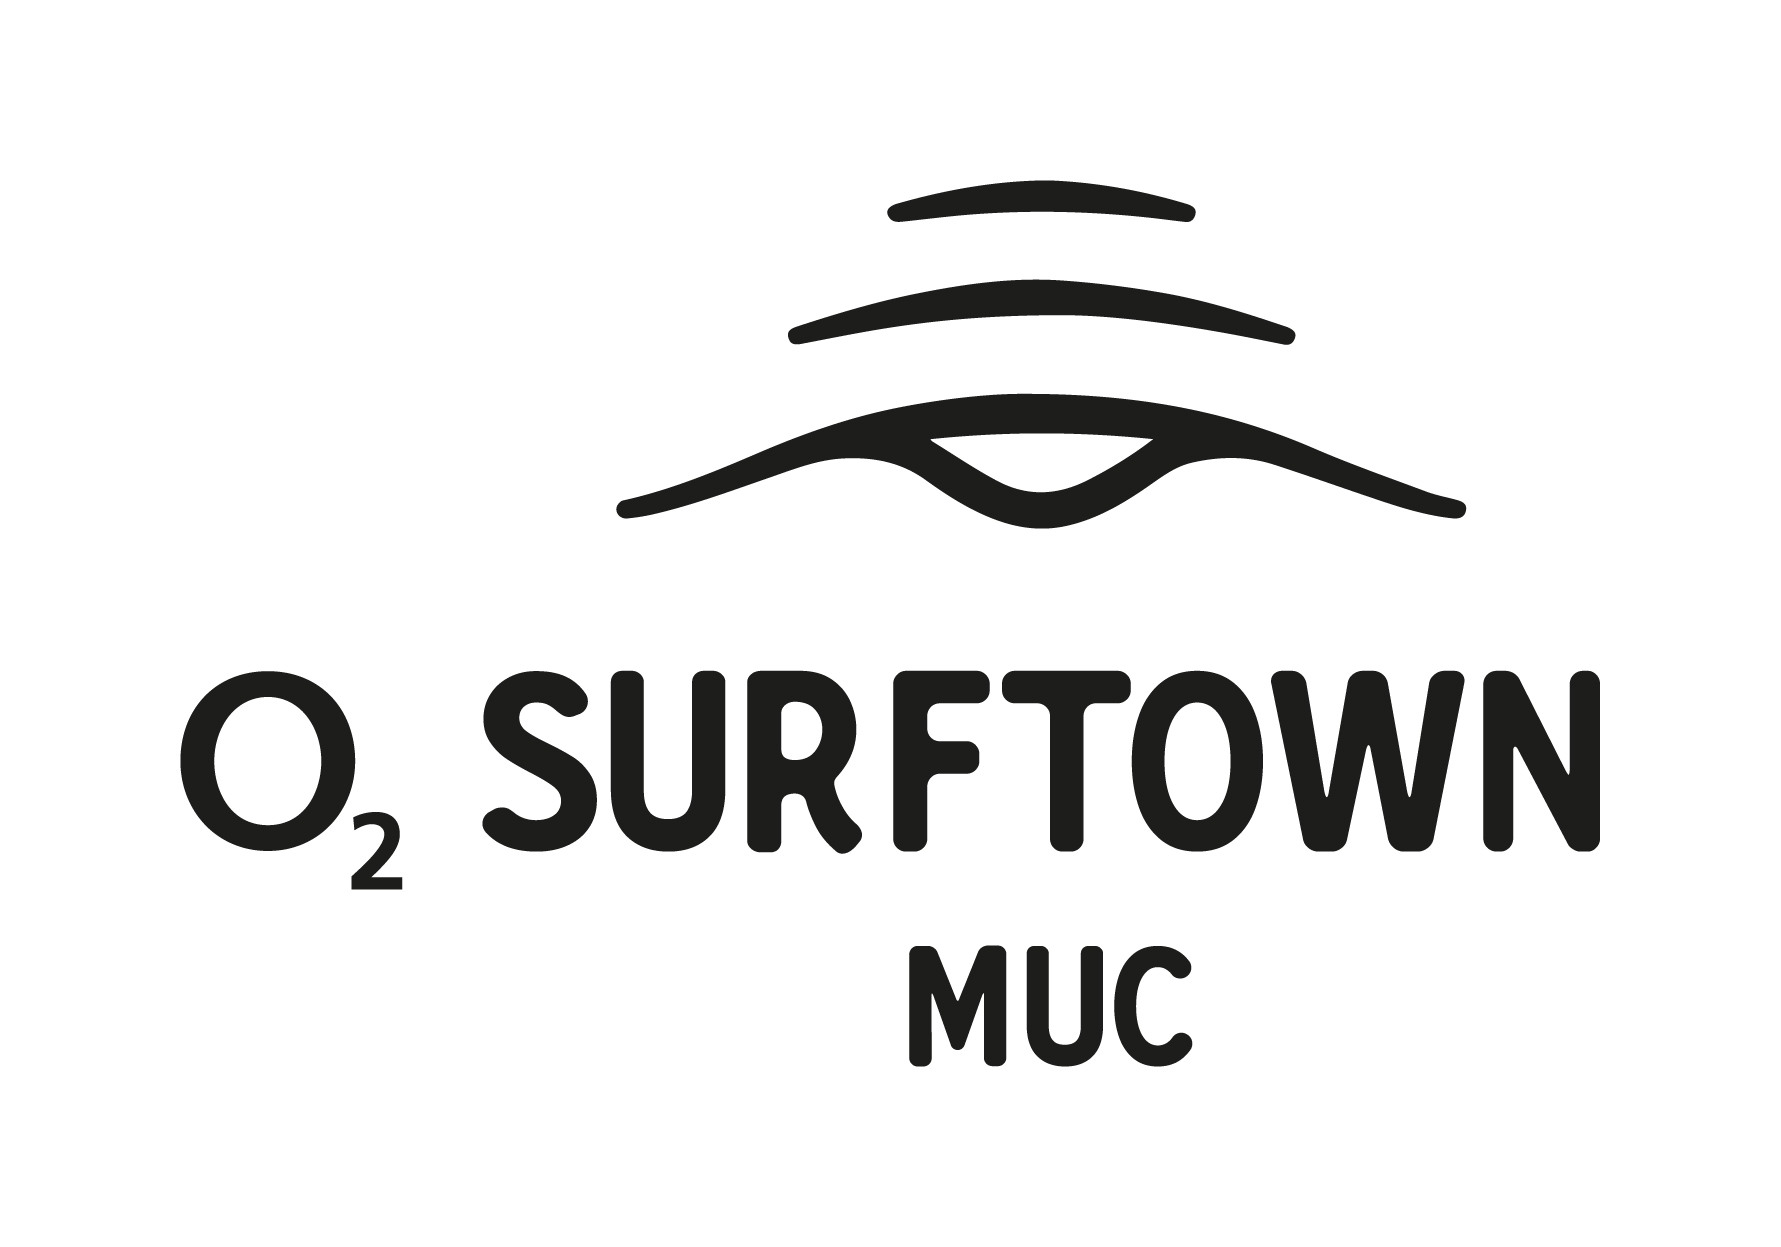 O2 Surftown Muc